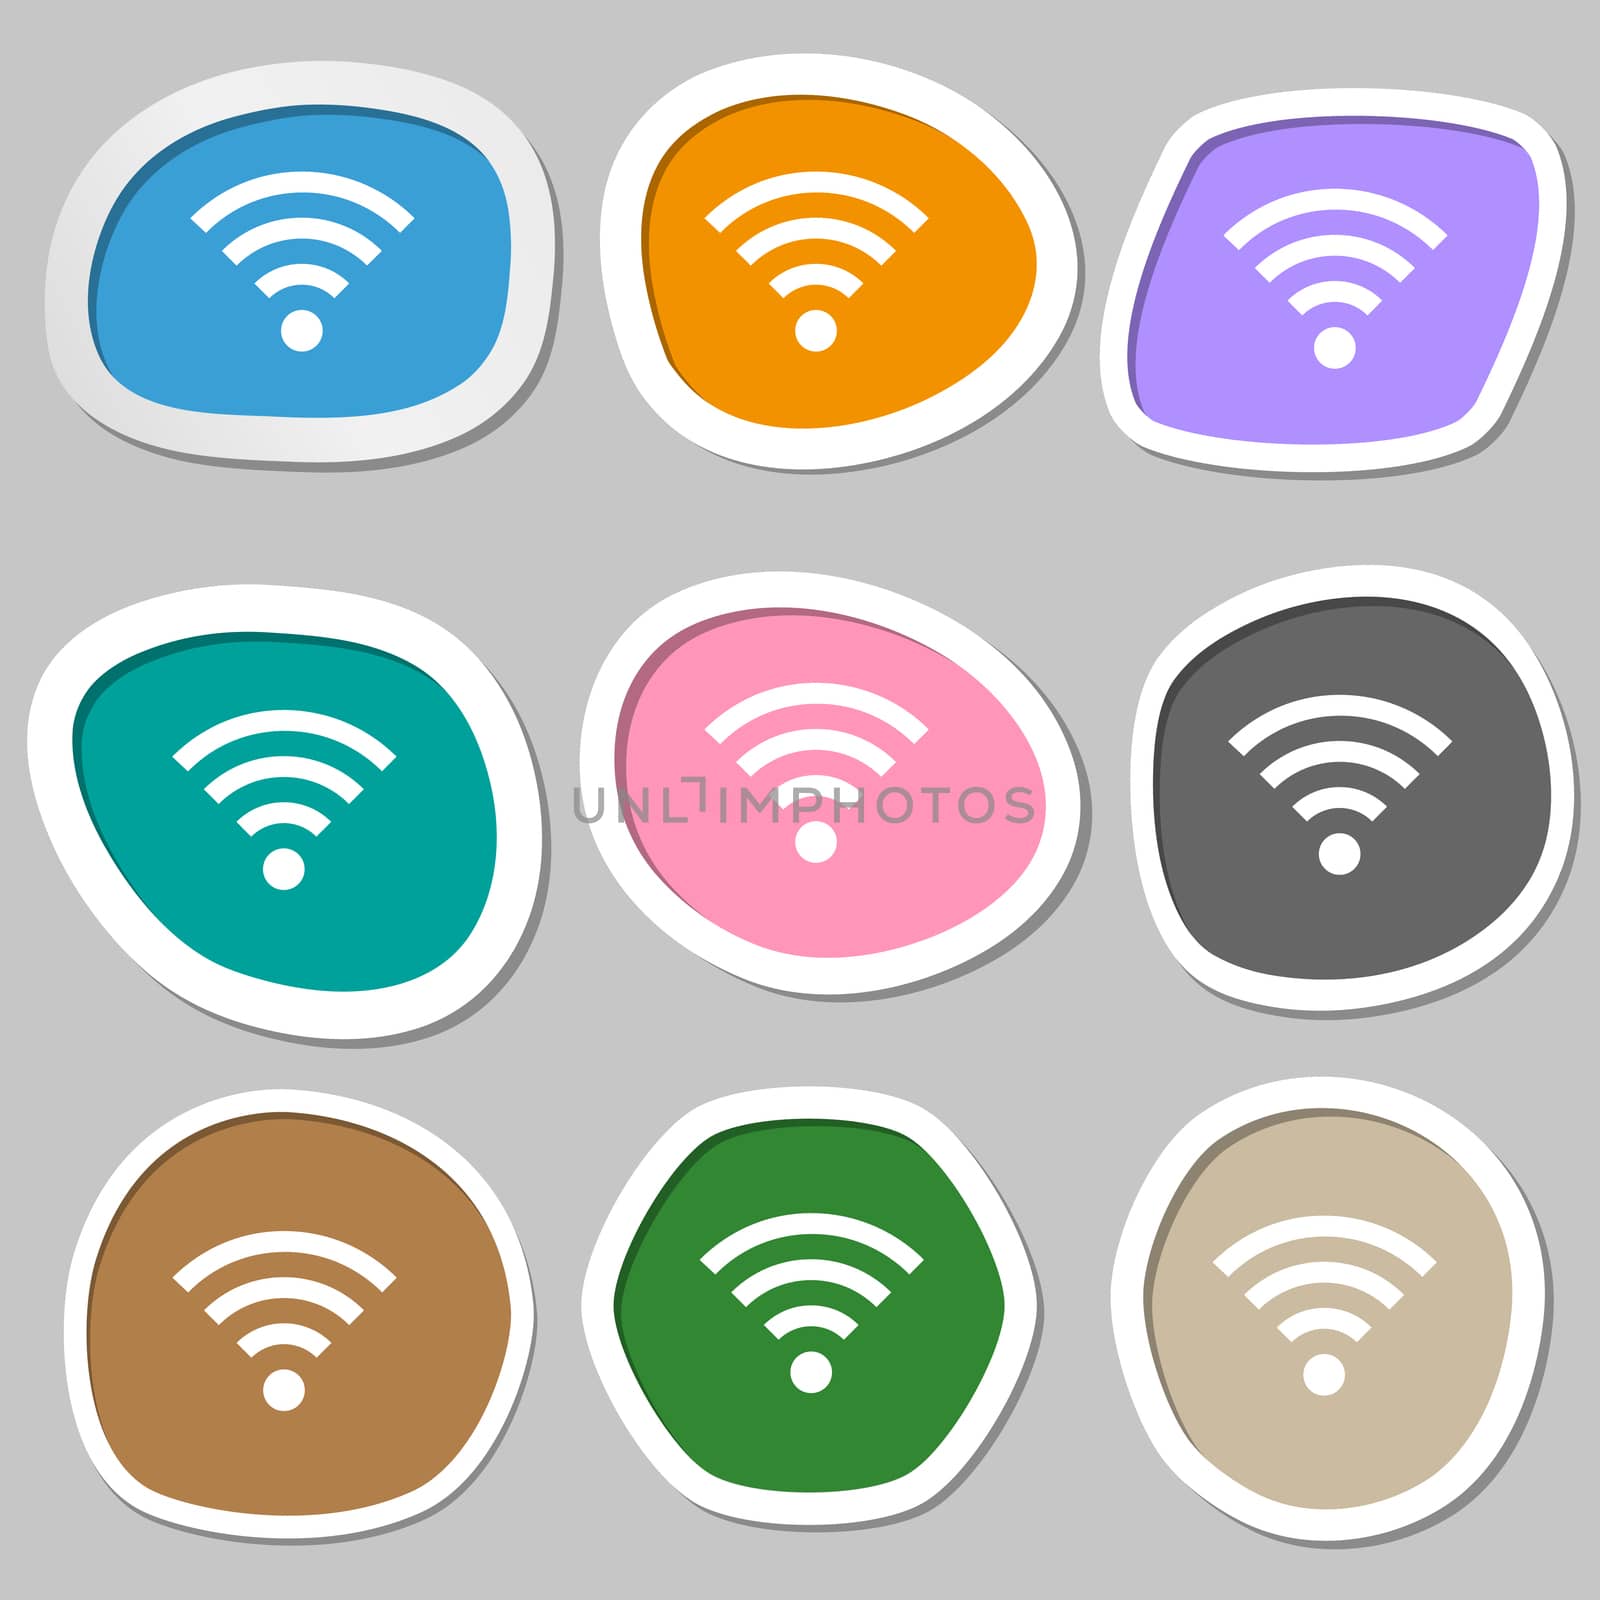 Wifi sign. Wi-fi symbol. Wireless Network icon zone. Multicolored paper stickers. illustration